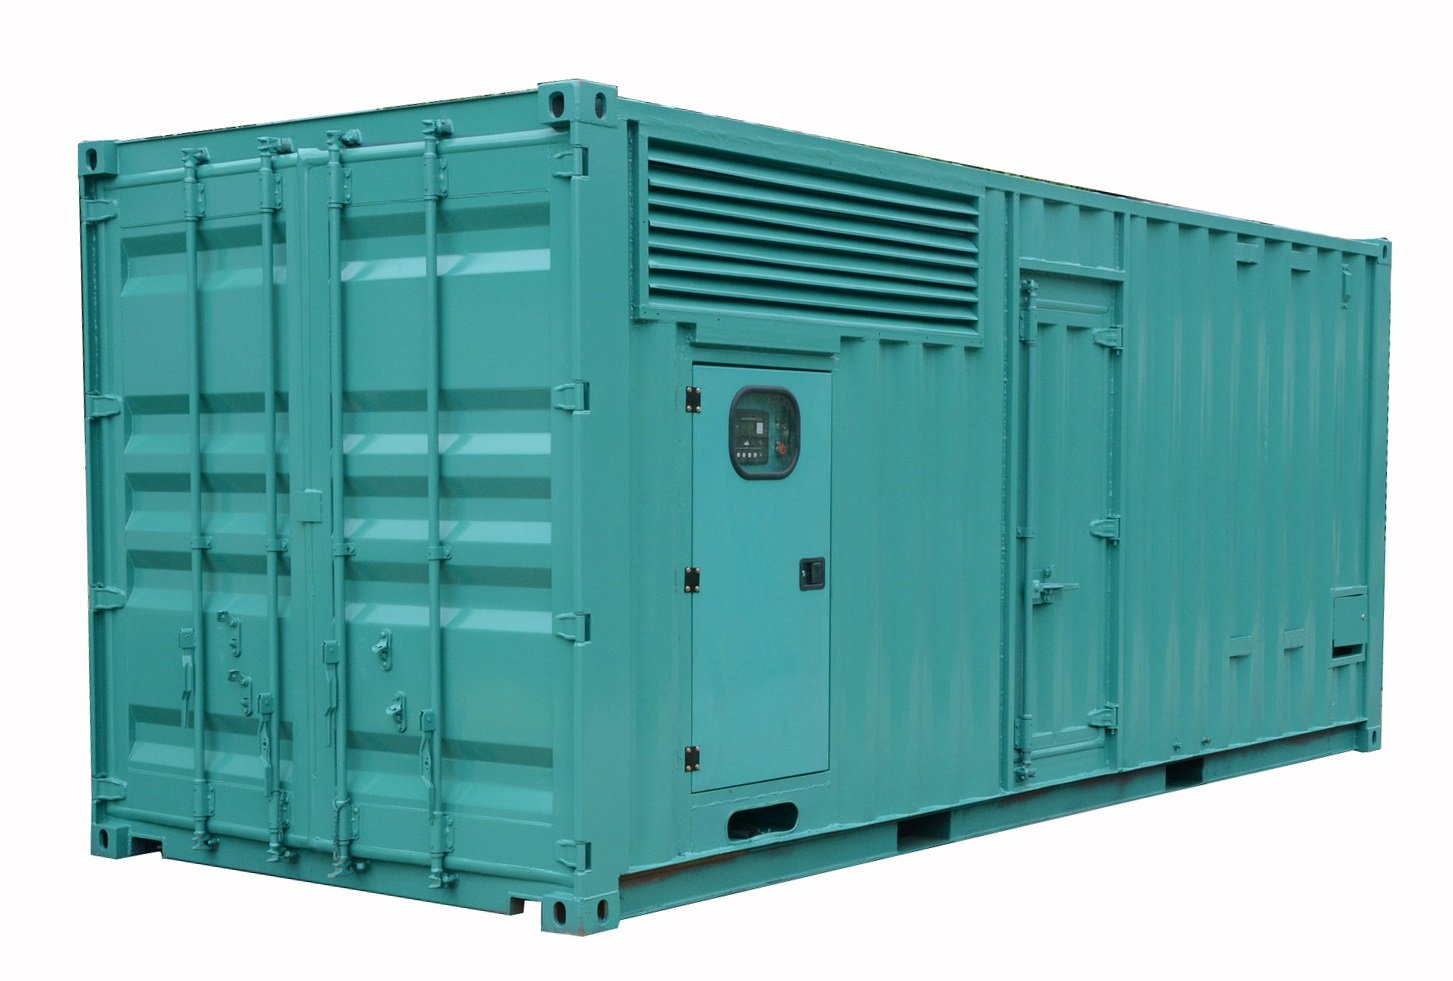 1000kVA dieselgenerator met geluiddichte luifel gemaakt door standaard 20fts-container